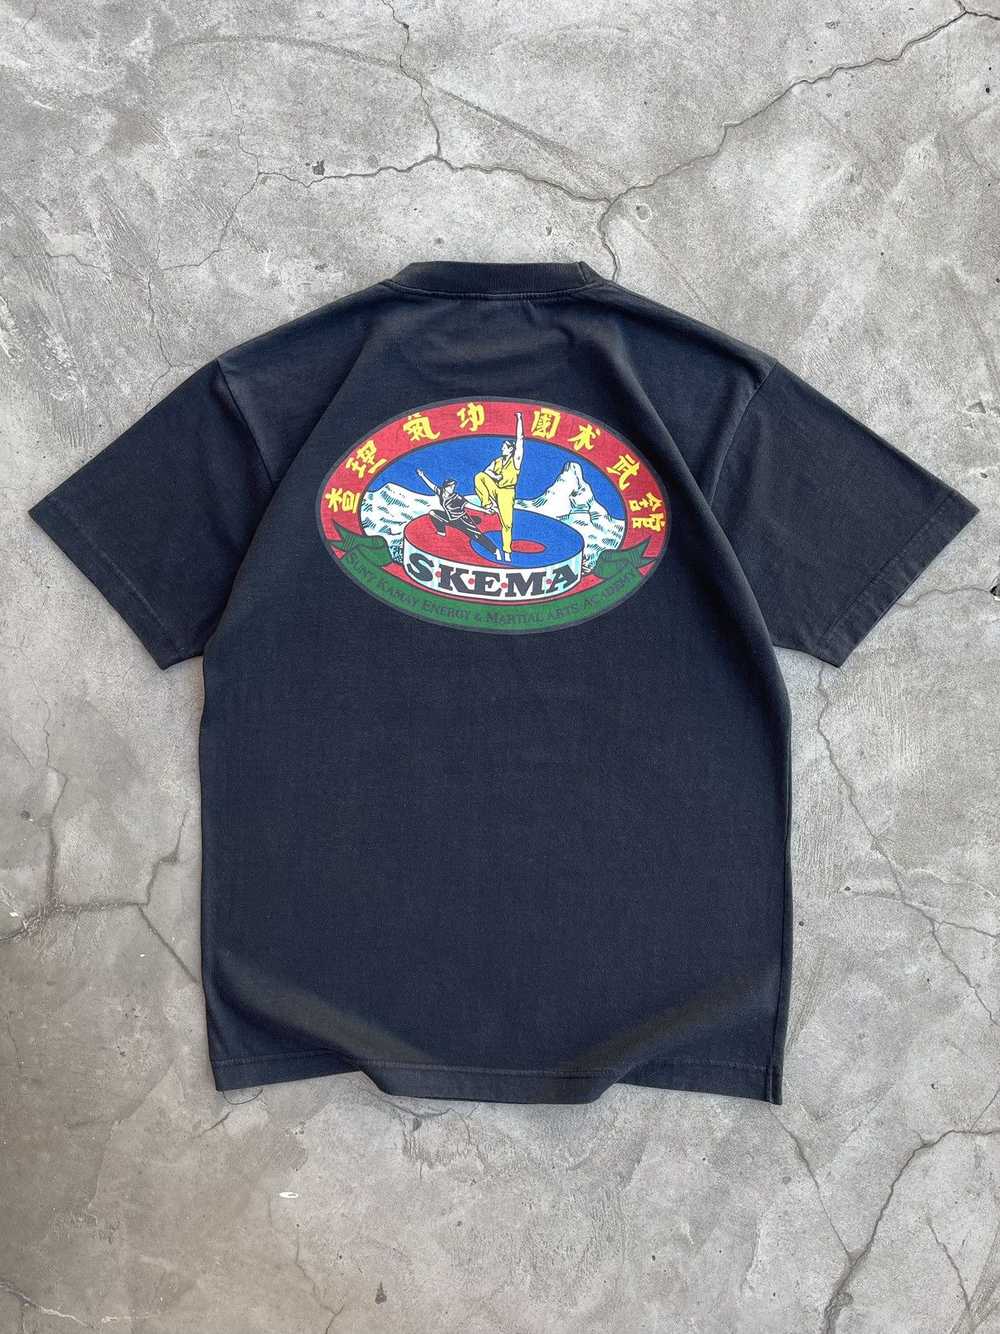 Rare × Vintage S•K•E•M•A Faded Vintage T-Shirt 90s - image 1